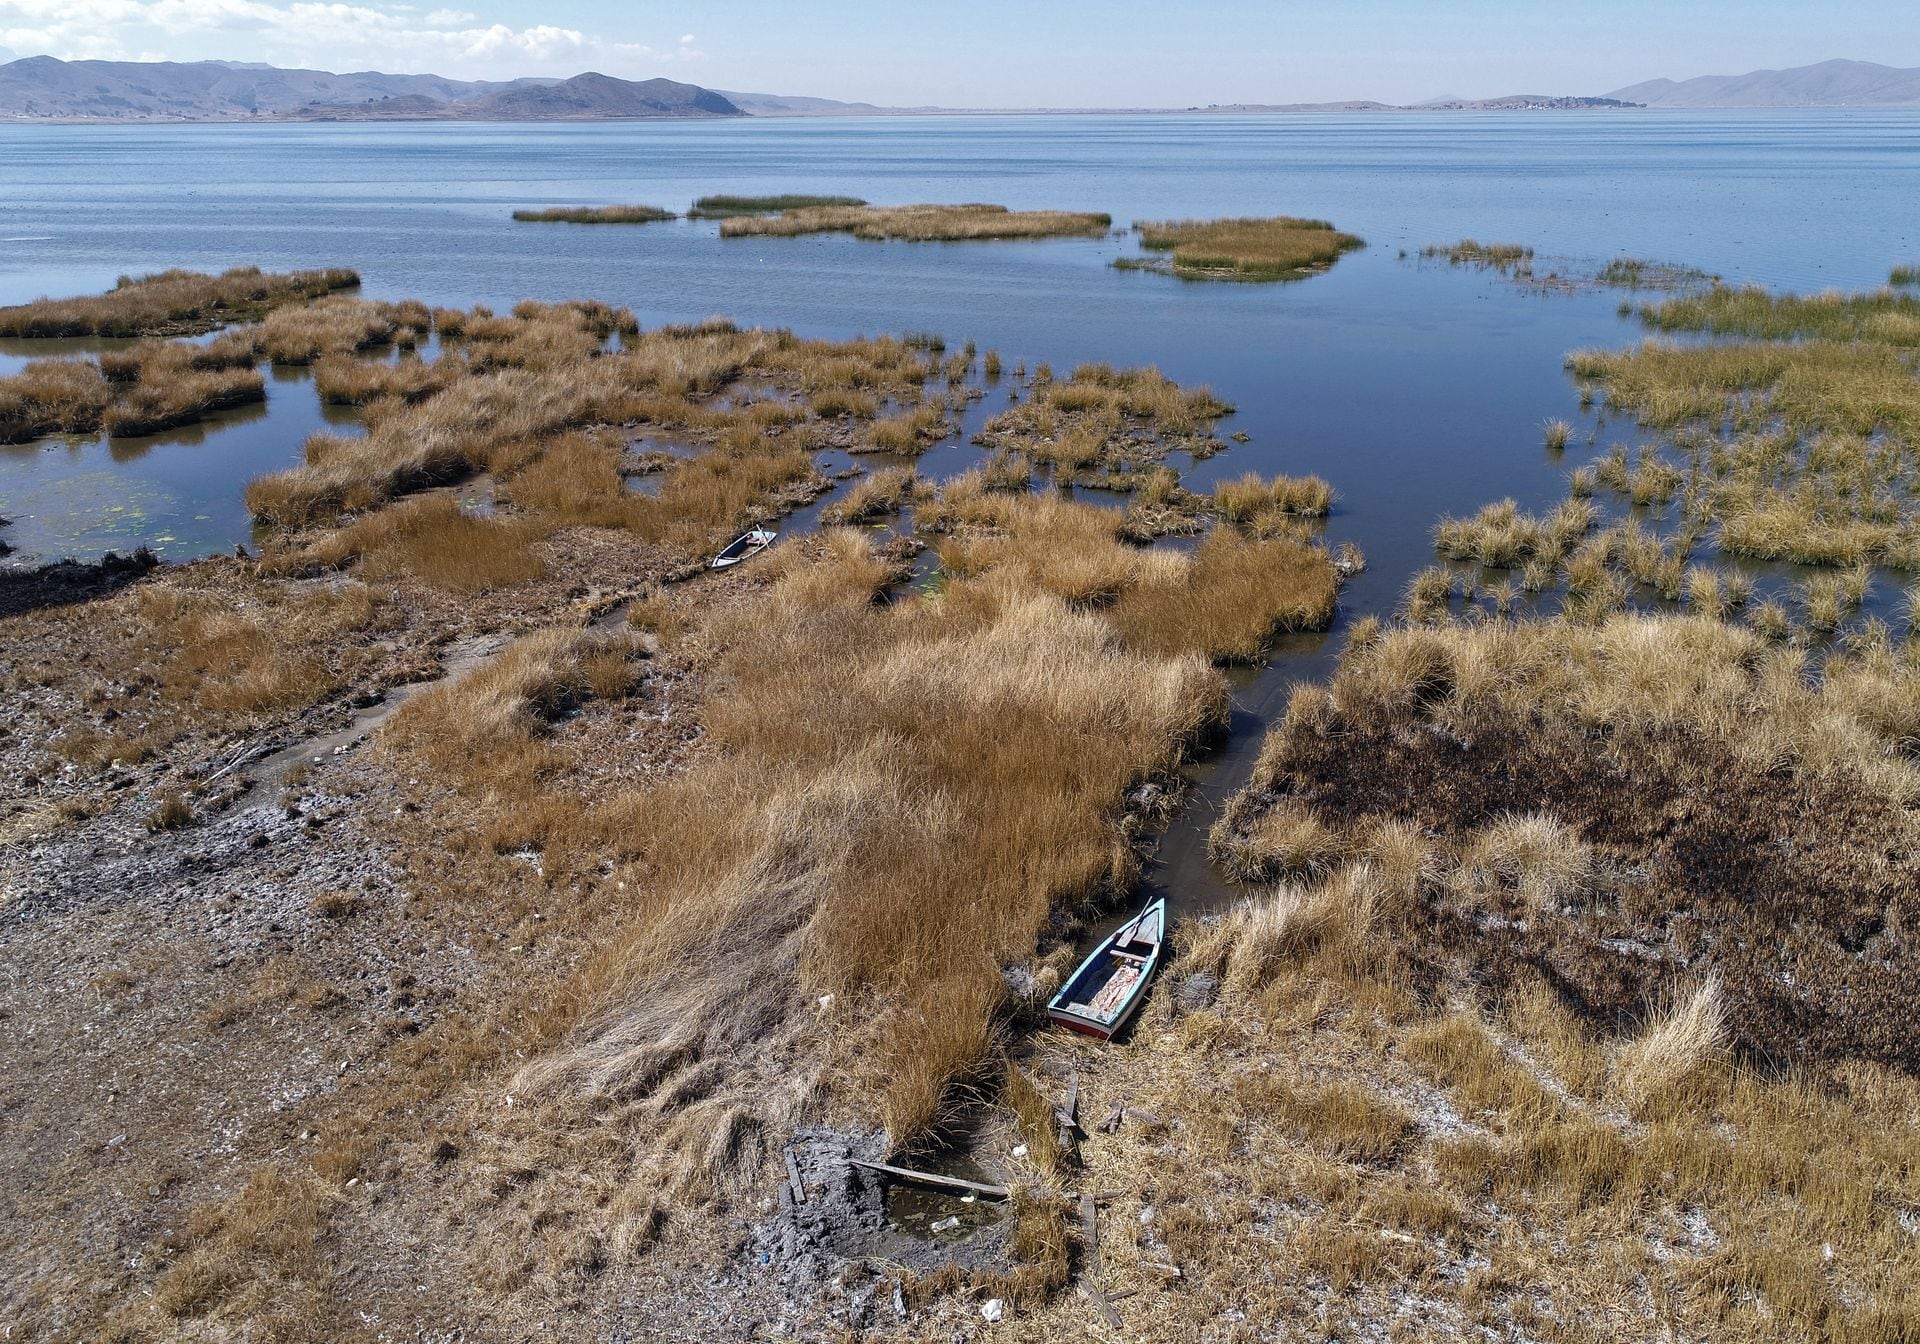 El nivel del agua del lago Titicaca , a 3.807 metros
<p><h2>Objetivos de Desarrollo Sostenible (ODS) relacionados con el artículo:</h2>

<ul>
<li>ODS 7: Energía asequible y no contaminante</li>
<li>ODS 13: Acción por el clima</li>
</ul>
<p><h2>Metas específicas de los ODS identificadas en el artículo:</h2>

<ul>
<li>Meta 7.2: Aumentar la proporción de energía renovable en el mix energético global</li>
<li>Meta 13.1: Fortalecer la resiliencia y la capacidad de adaptación a los riesgos relacionados con el clima y los desastres naturales</li>
<li>Meta 13.3: Mejorar la educación, la sensibilización y la capacidad humana e institucional respecto de la mitigación del cambio climático, la adaptación a él, la reducción de sus efectos y la alerta temprana</li>
</ul>
<p><h2>Indicadores de los ODS mencionados en el artículo:</h2>

<ul>
<li>Indicador 7.2.1: Proporción de energía renovable en el consumo final de energía</li>
<li>Indicador 13.1.1: Número total de muertes, desapariciones, personas heridas o afectadas como resultado de desastres naturales por cada 100,000 habitantes</li>
<li>Indicador 13.3.1: Número de países que han integrado medidas de mitigación y adaptación al cambio climático en sus políticas, estrategias y planes nacionales</li>
</ul>
<p><h2>Tabla de ODS, metas e indicadores:</h2>

<table>
<tr>
<p><th>ODS</th>

<p><th>Metas</th>

<p><th>Indicadores</th>

</tr>
<tr>
<p><td>ODS 7: Energía asequible y no contaminante</td>

<p><td>Meta 7.2: Aumentar la proporción de energía renovable en el mix energético global</td>

<p><td>Indicador 7.2.1: Proporción de energía renovable en el consumo final de energía</td>

</tr>
<tr>
<p><td>ODS 13: Acción por el clima</td>

<p><td>Meta 13.1: Fortalecer la resiliencia y la capacidad de adaptación a los riesgos relacionados con el clima y los desastres naturales</td>

<p><td>Indicador 13.1.1: Número total de muertes, desapariciones, personas heridas o afectadas como resultado de desastres naturales por cada 100,000 habitantes</td>

</tr>
<tr>
<p><td>ODS 13: Acción por el clima</td>

<p><td>Meta 13.3: Mejorar la educación, la sensibilización y la capacidad humana e institucional respecto de la mitigación del cambio climático, la adaptación a él, la reducción de sus efectos y la alerta temprana</td>

<p><td>Indicador 13.3.1: Número de países que han integrado medidas de mitigación y adaptación al cambio climático en sus políticas, estrategias y planes nacionales</td>

</tr>
</table>
<p><strong>¡Atención!</strong> Este espléndido artículo nace de la fuente del conocimiento, moldeado por una maravillosa tecnología patentada de inteligencia artificial que profundizó en un vasto océano de datos, iluminando el camino hacia los Objetivos de Desarrollo Sostenible. Recuerda que todos los derechos están reservados por SDG Investors LLC, lo que nos permite defender el progreso juntos.
<p><strong>Fuente: <a href=